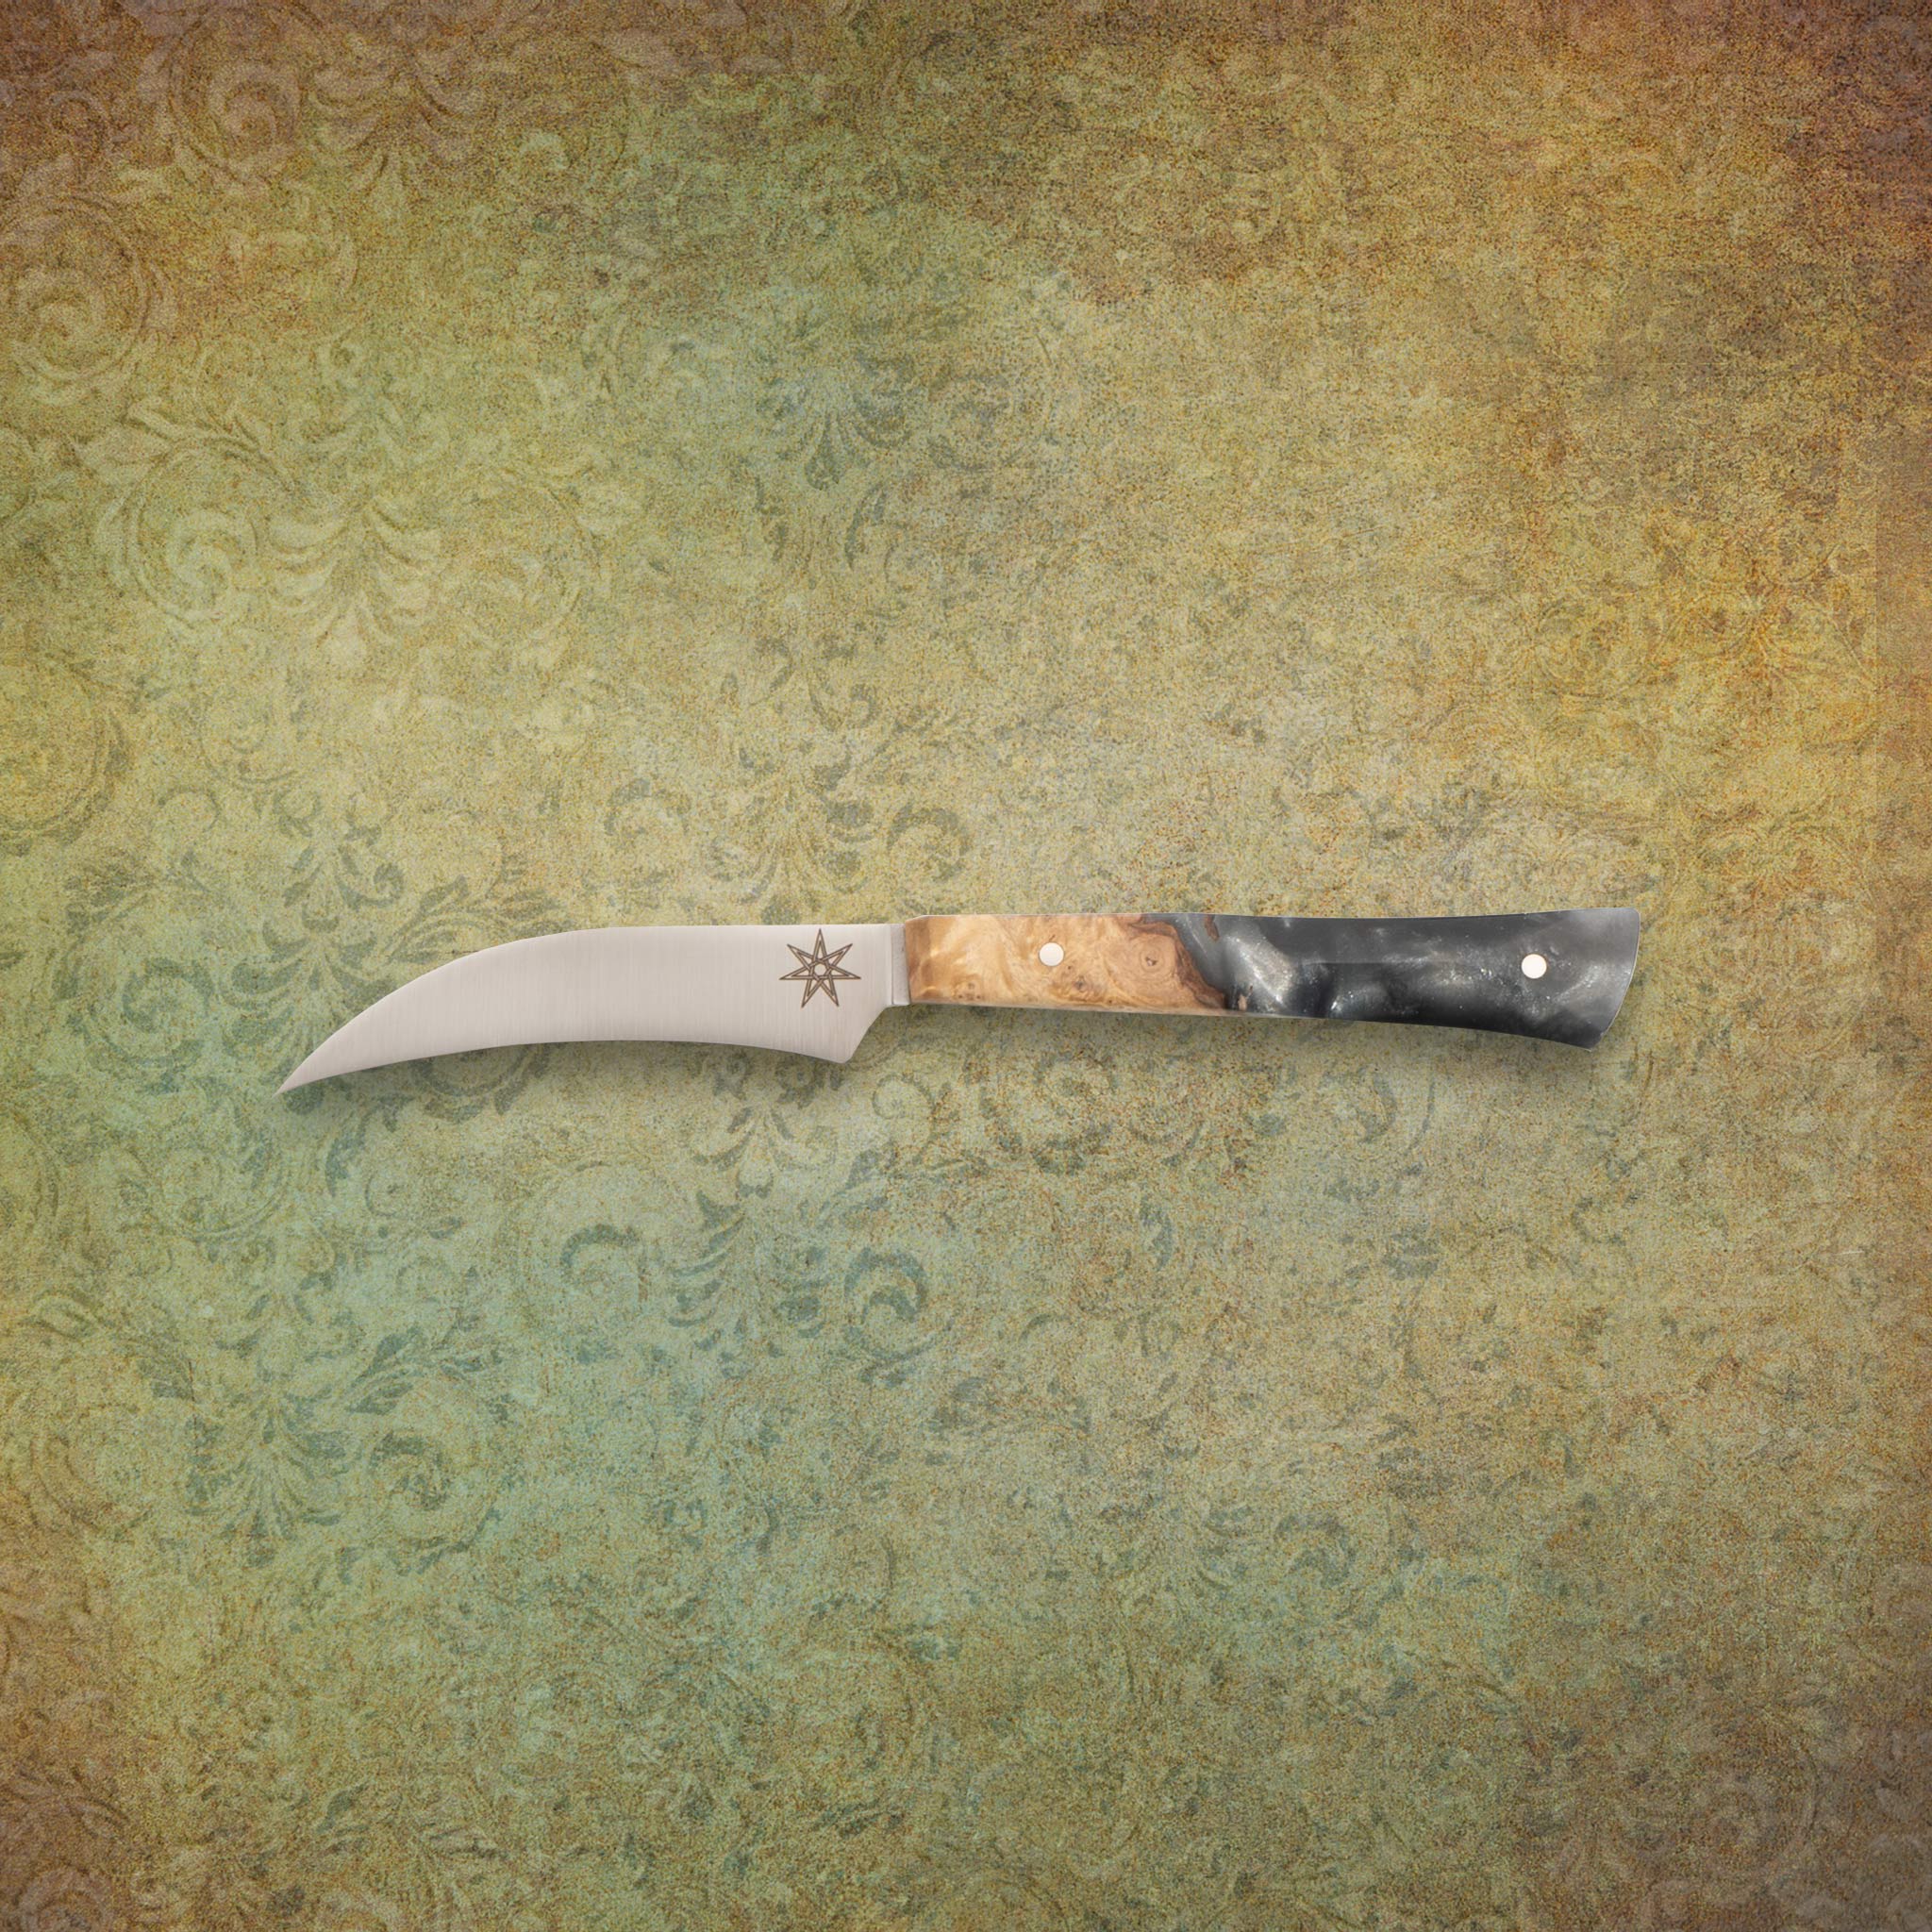 Town Cutler 3" bird's beak knife from Ag 47 knife line.